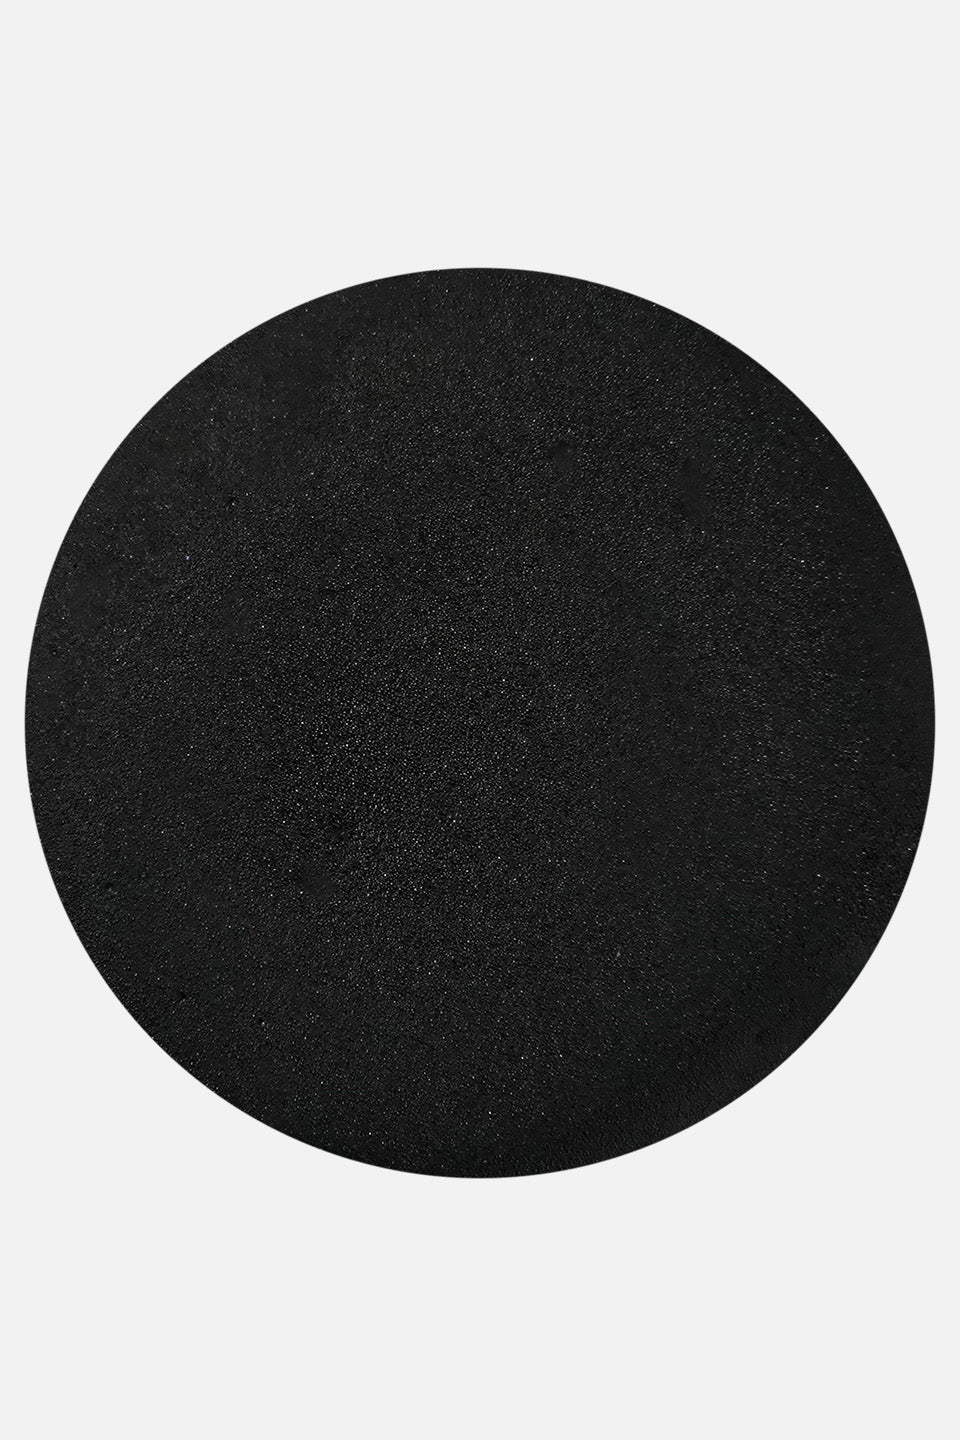 Polvere acrilica nero Evelina 3 g